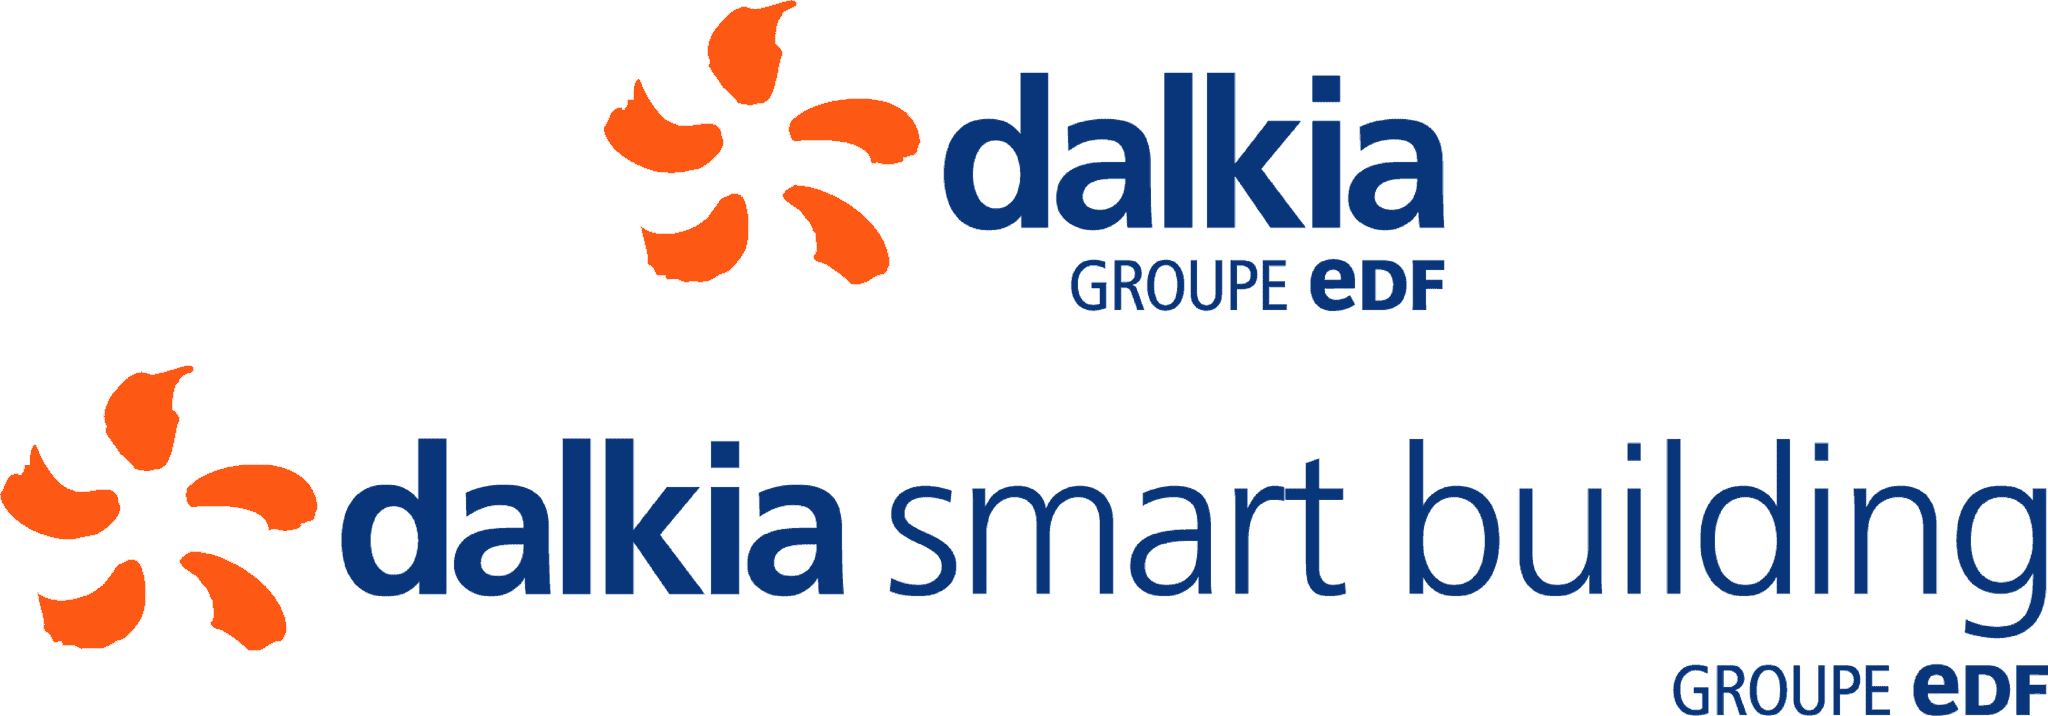 Logo-Dalkia-et-DSB-client-Cler-ingénierie